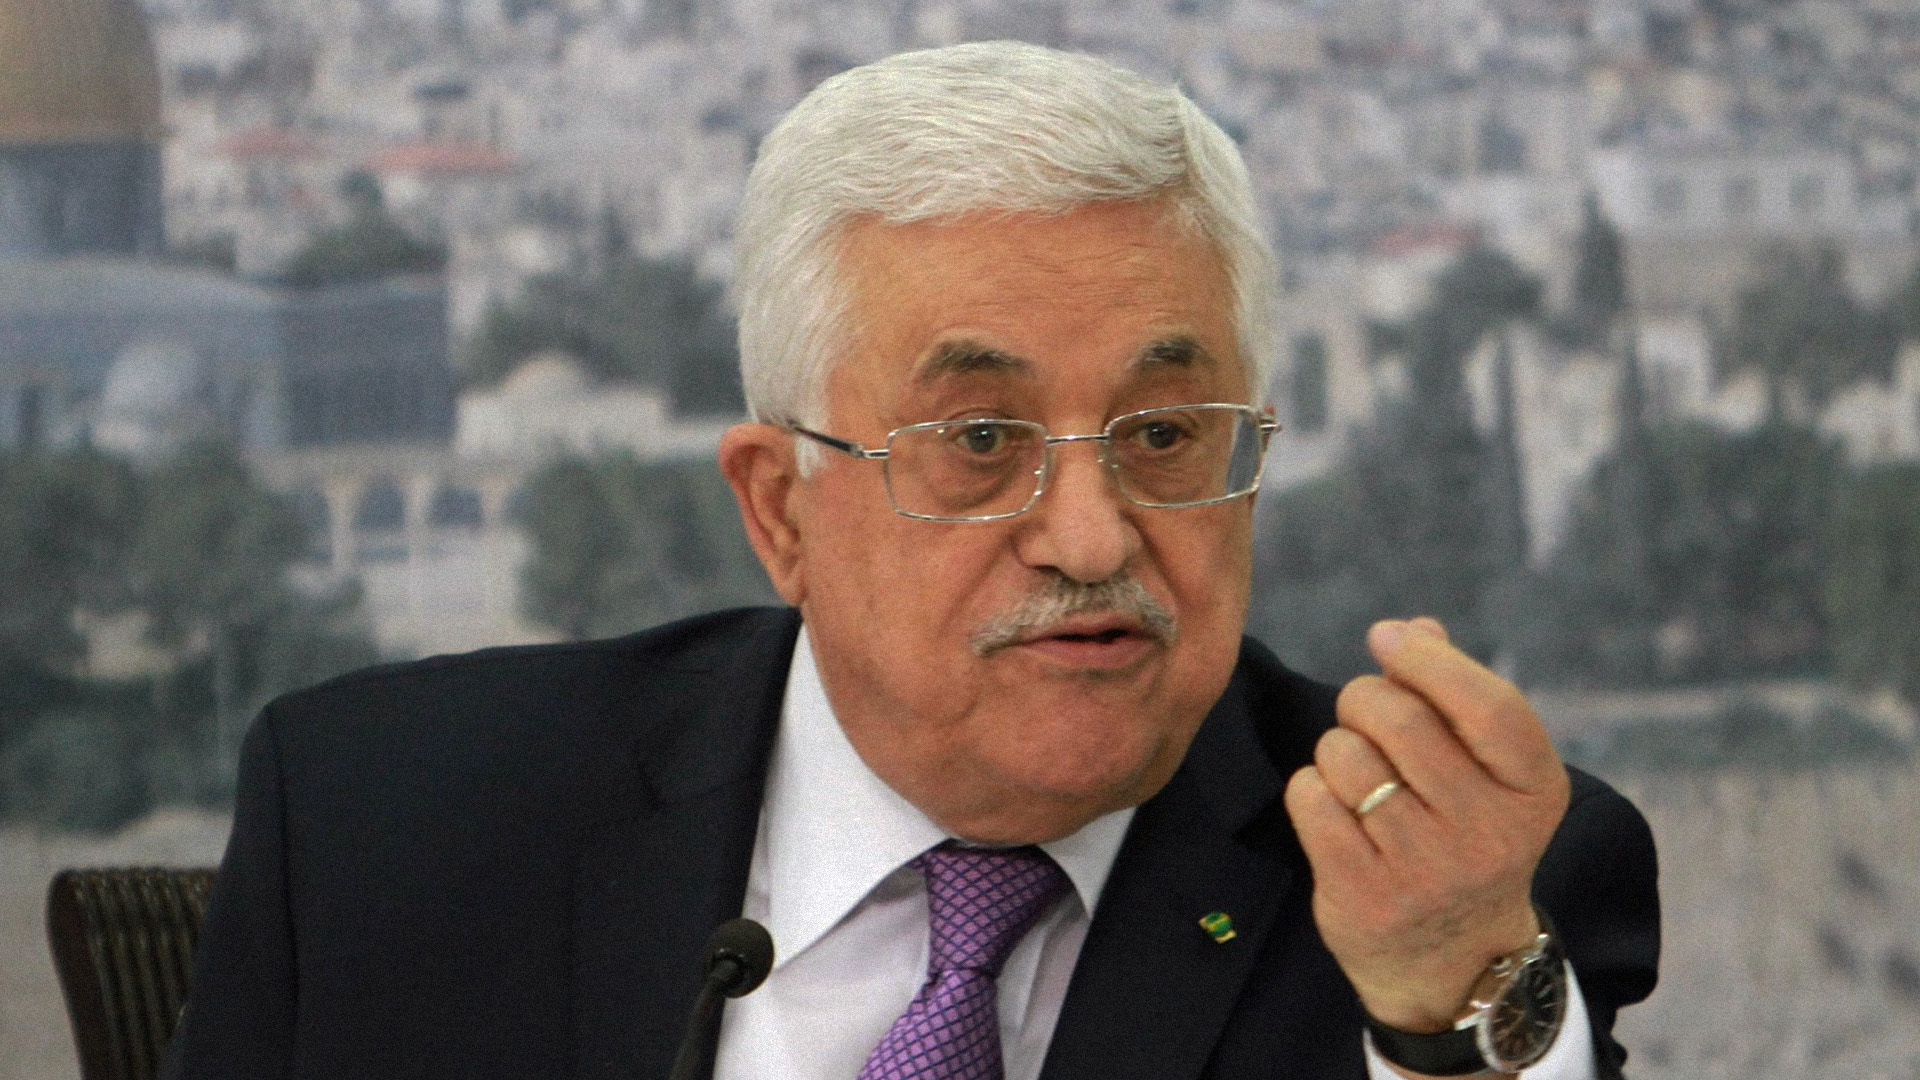 صورة عباس يطالب بتزويد السلطة الفلسطينية بطائرات إف-١٦ للتعامل مع الضفة